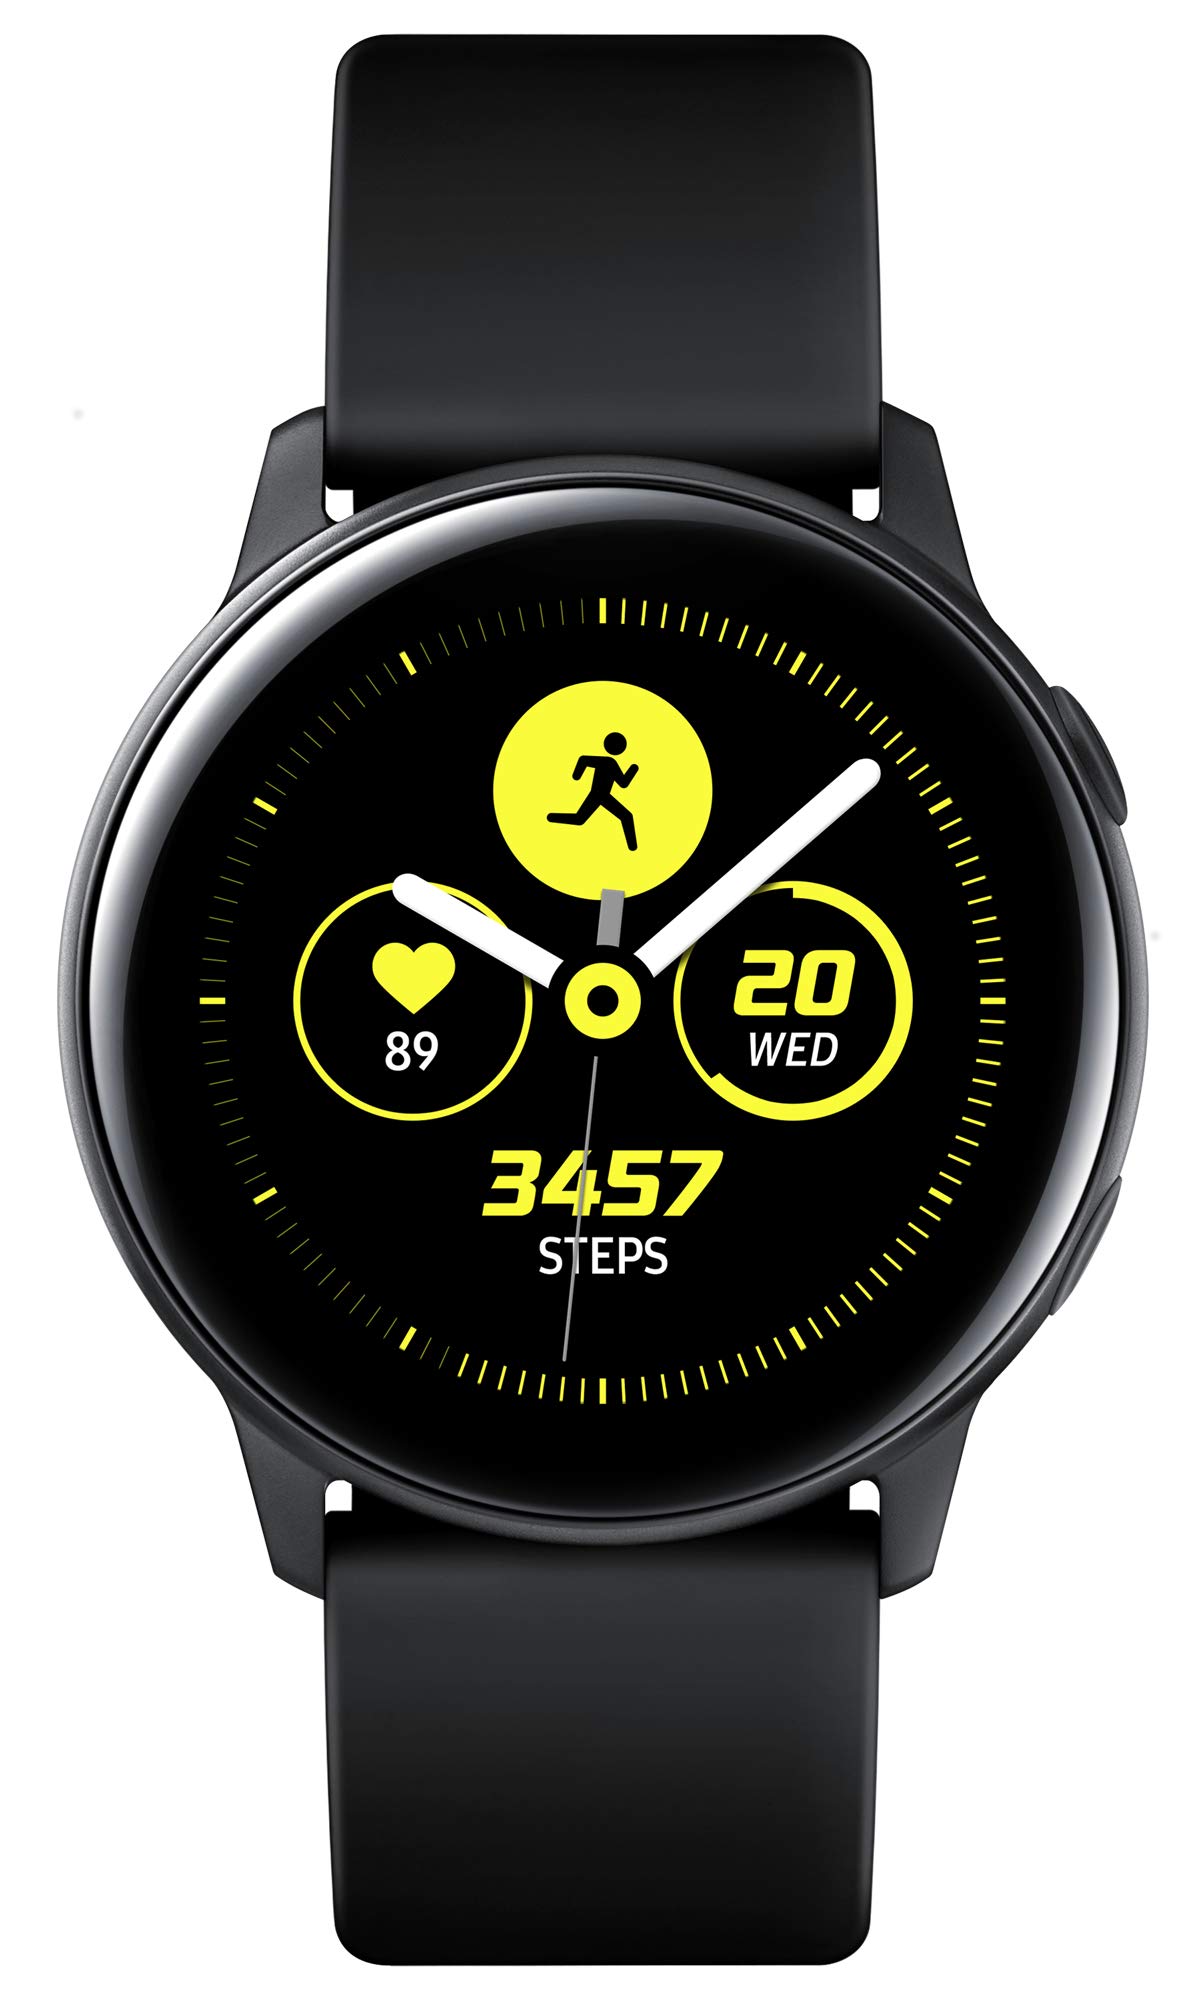 Samsung Galaxy Watch Active, Bluetooth Fitnessarmband Für Android, Fitness-Tracker, 40 mm,wassergeschützt, Schwarz (Deutche Version)